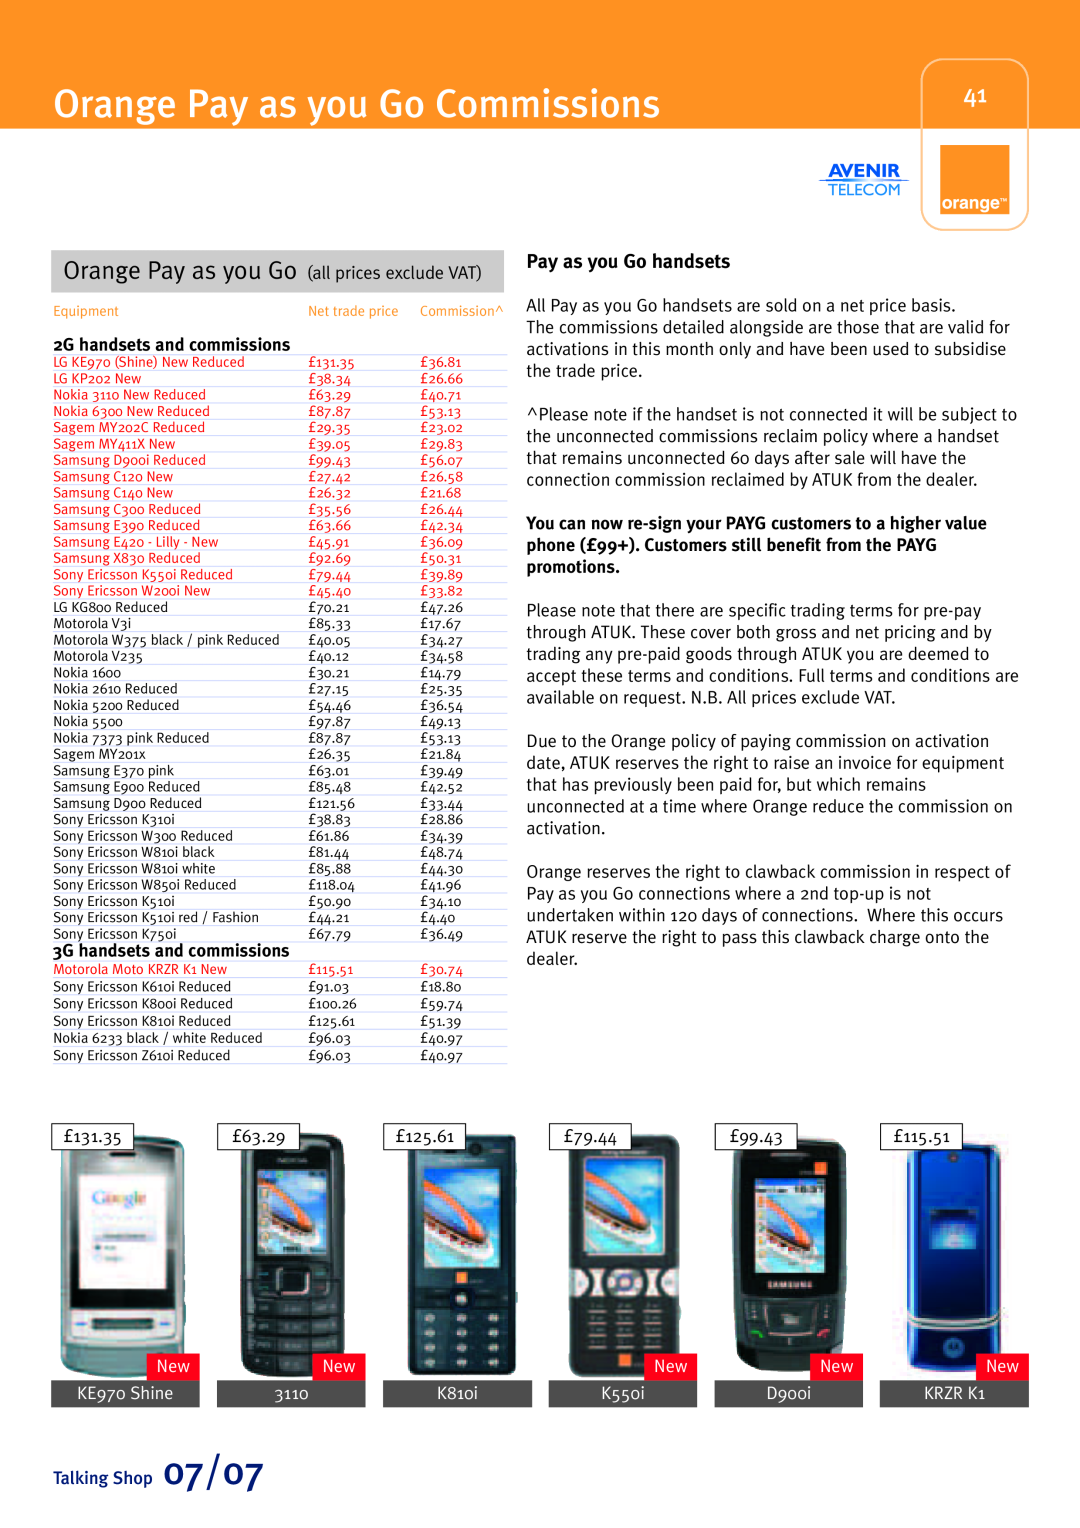 Sony Ericsson W580i Orange Pay as you Go Commissions, Pay as you Go handsets, 2G handsets and commissions, NewNew, 3110 